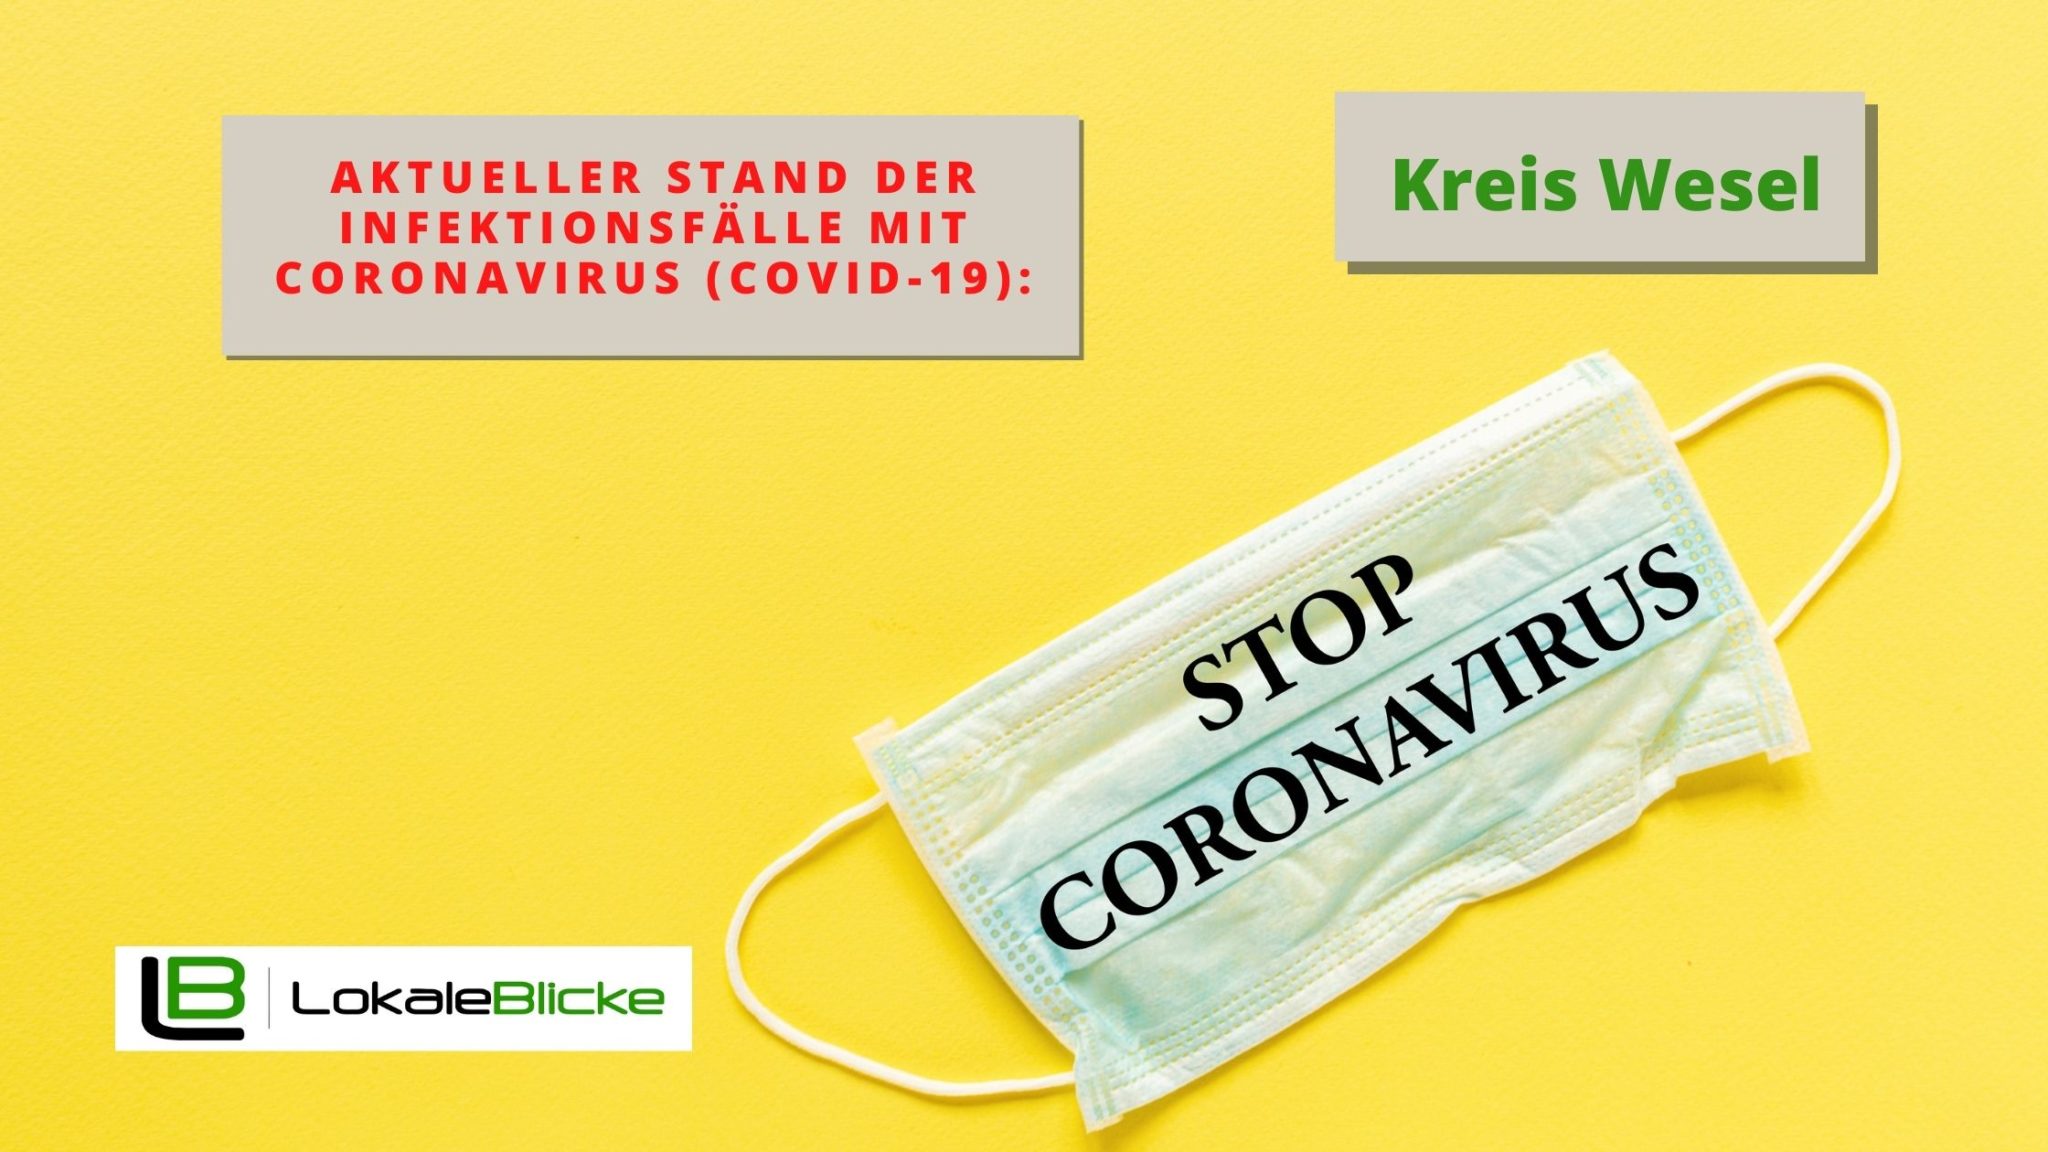 Aktueller Stand der Infektionsfälle mit Coronavirus (Covid-19):